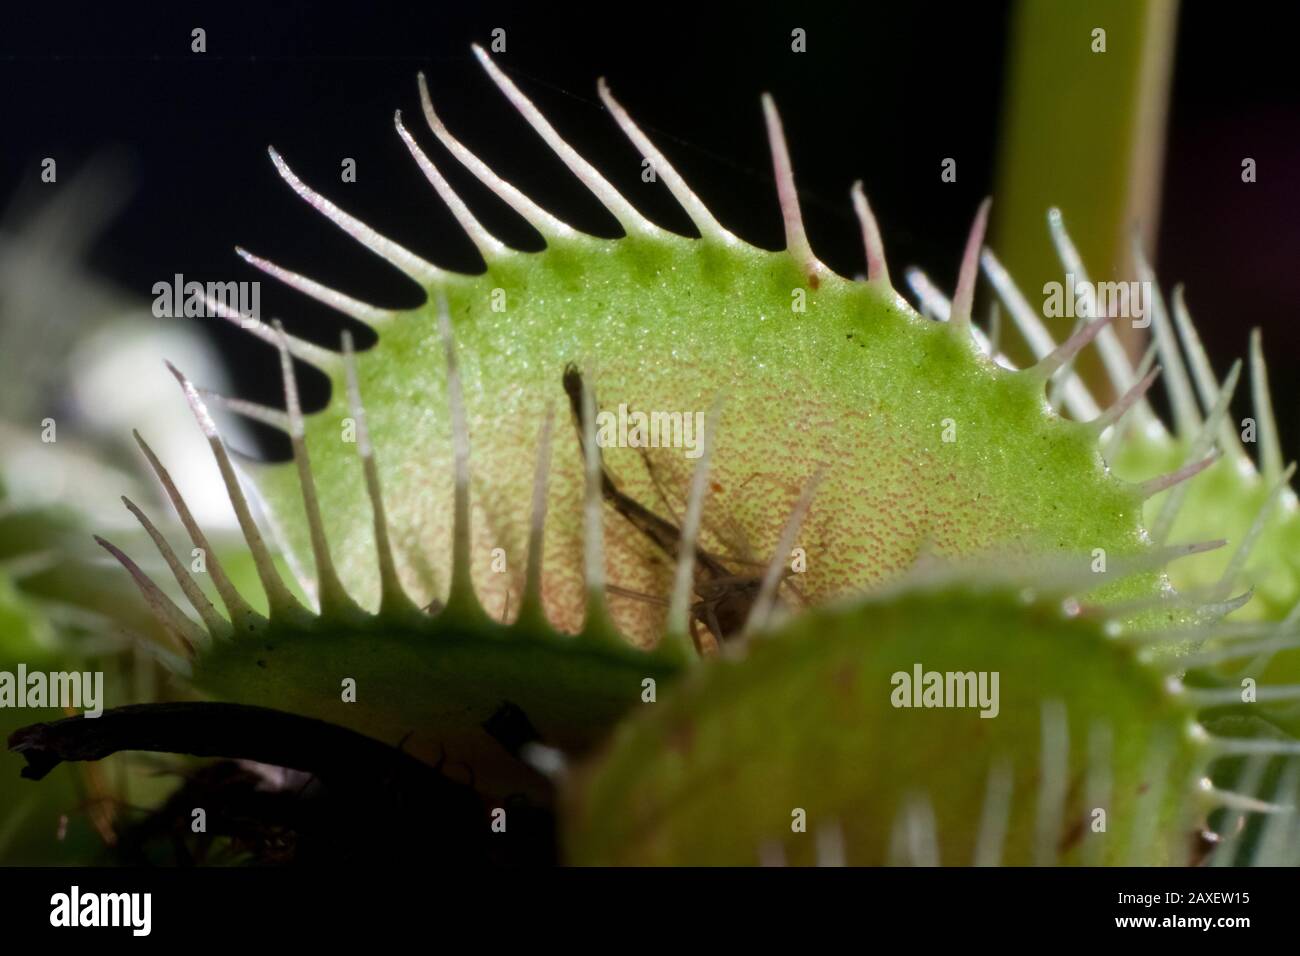 Close-up of a venus flytrap plant, details of the Dionaea traps Stock Photo